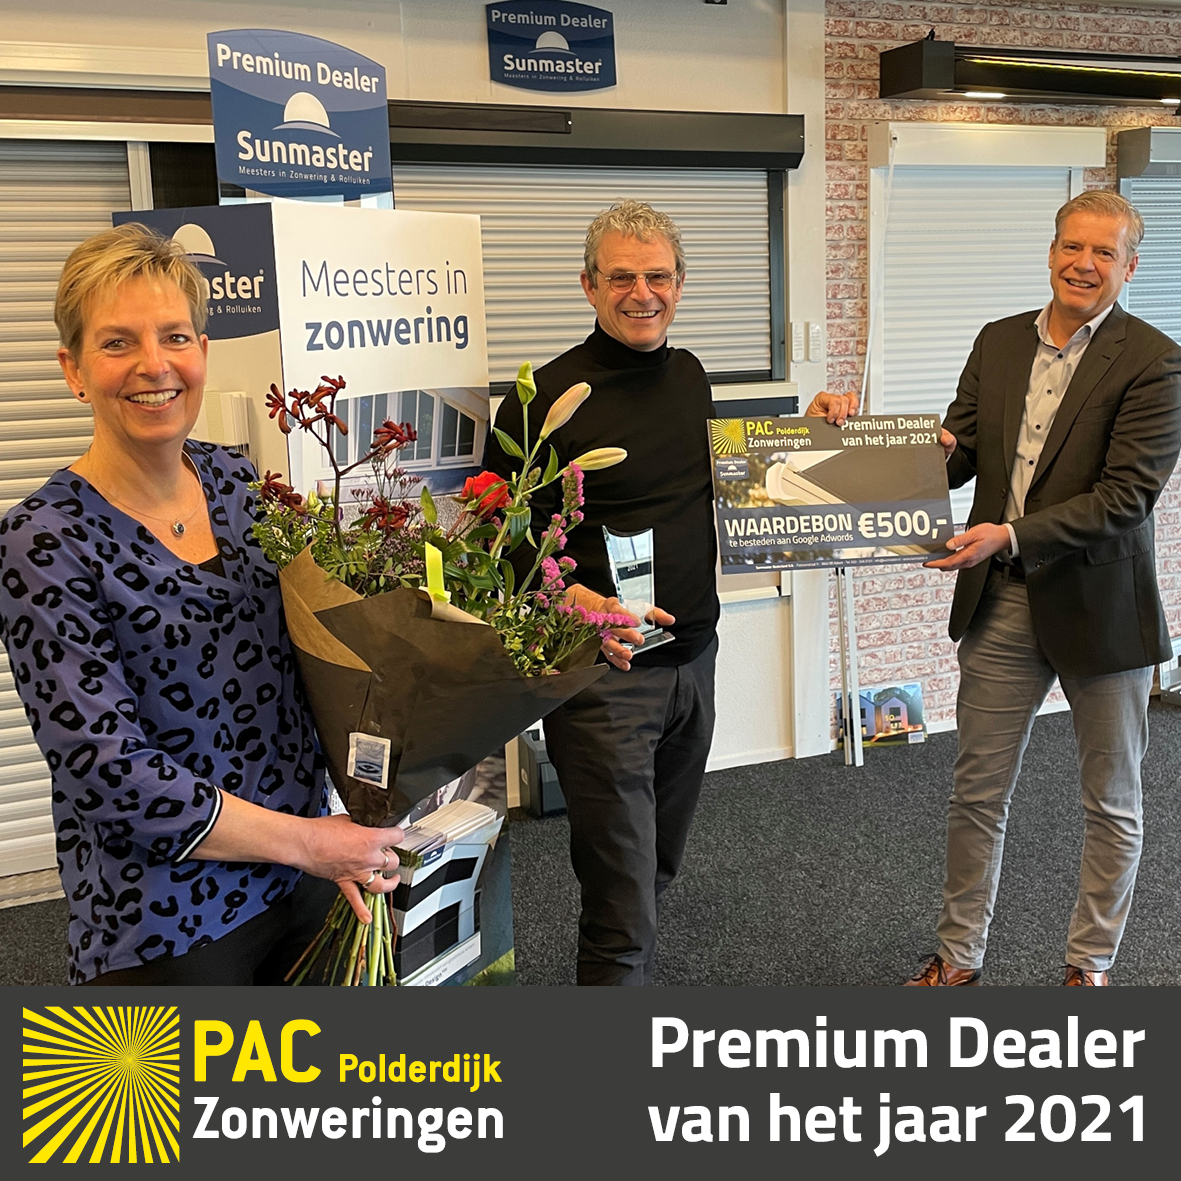 PAC Polderdijk Zonweringen uitgeroepen tot Sunmaster Premium Dealer van het jaar!